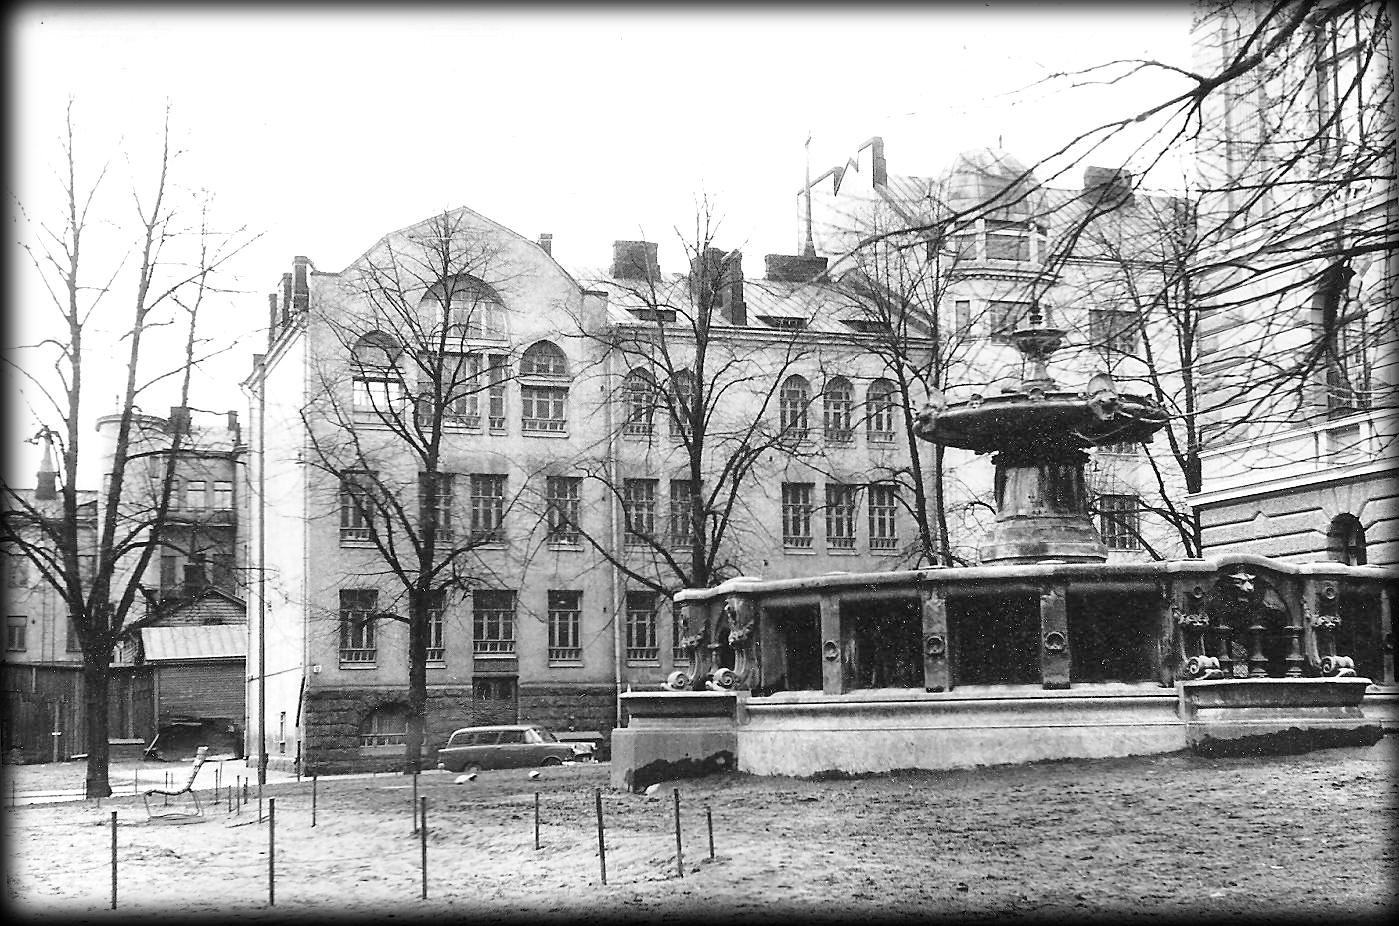 Minä vuonna valmistui Helsingin Uuden yhteiskoulun kuvassa näkyvä koulurakennus?